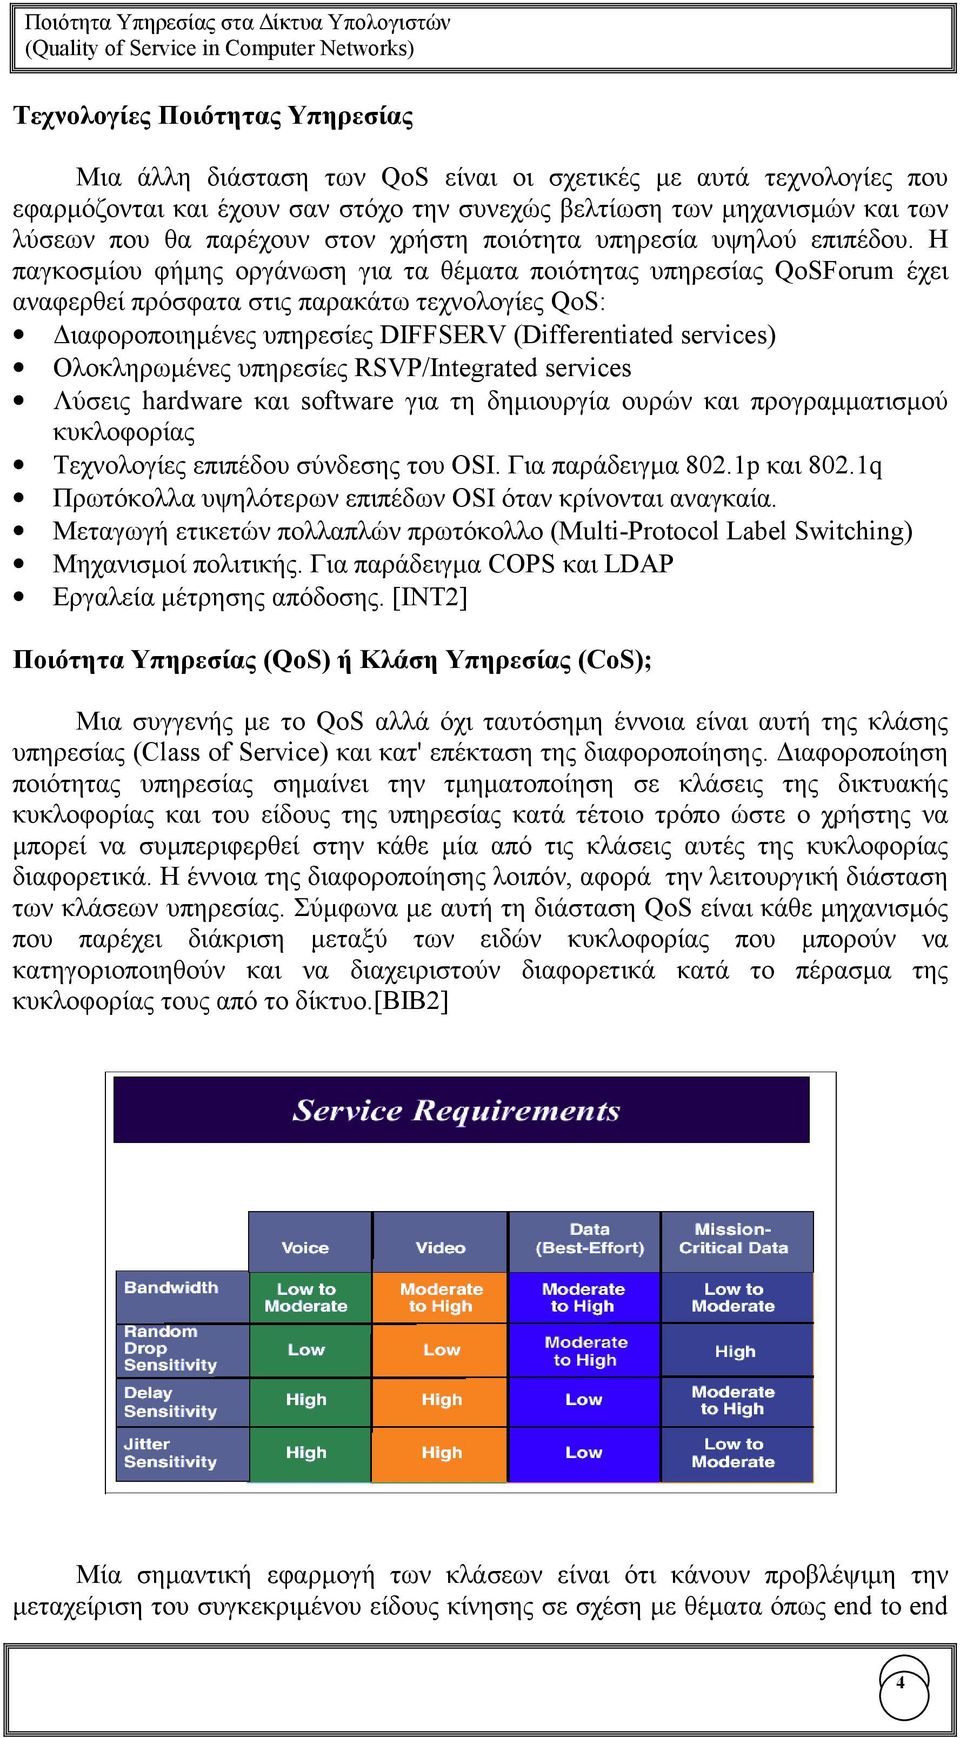 Η παγκοσµίου φήµης οργάνωση για τα θέµατα ποιότητας υπηρεσίας QoSForum έχει αναφερθεί πρόσφατα στις παρακάτω τεχνολογίες QoS: ιαφοροποιηµένες υπηρεσίες DIFFSERV (Differentiated services)